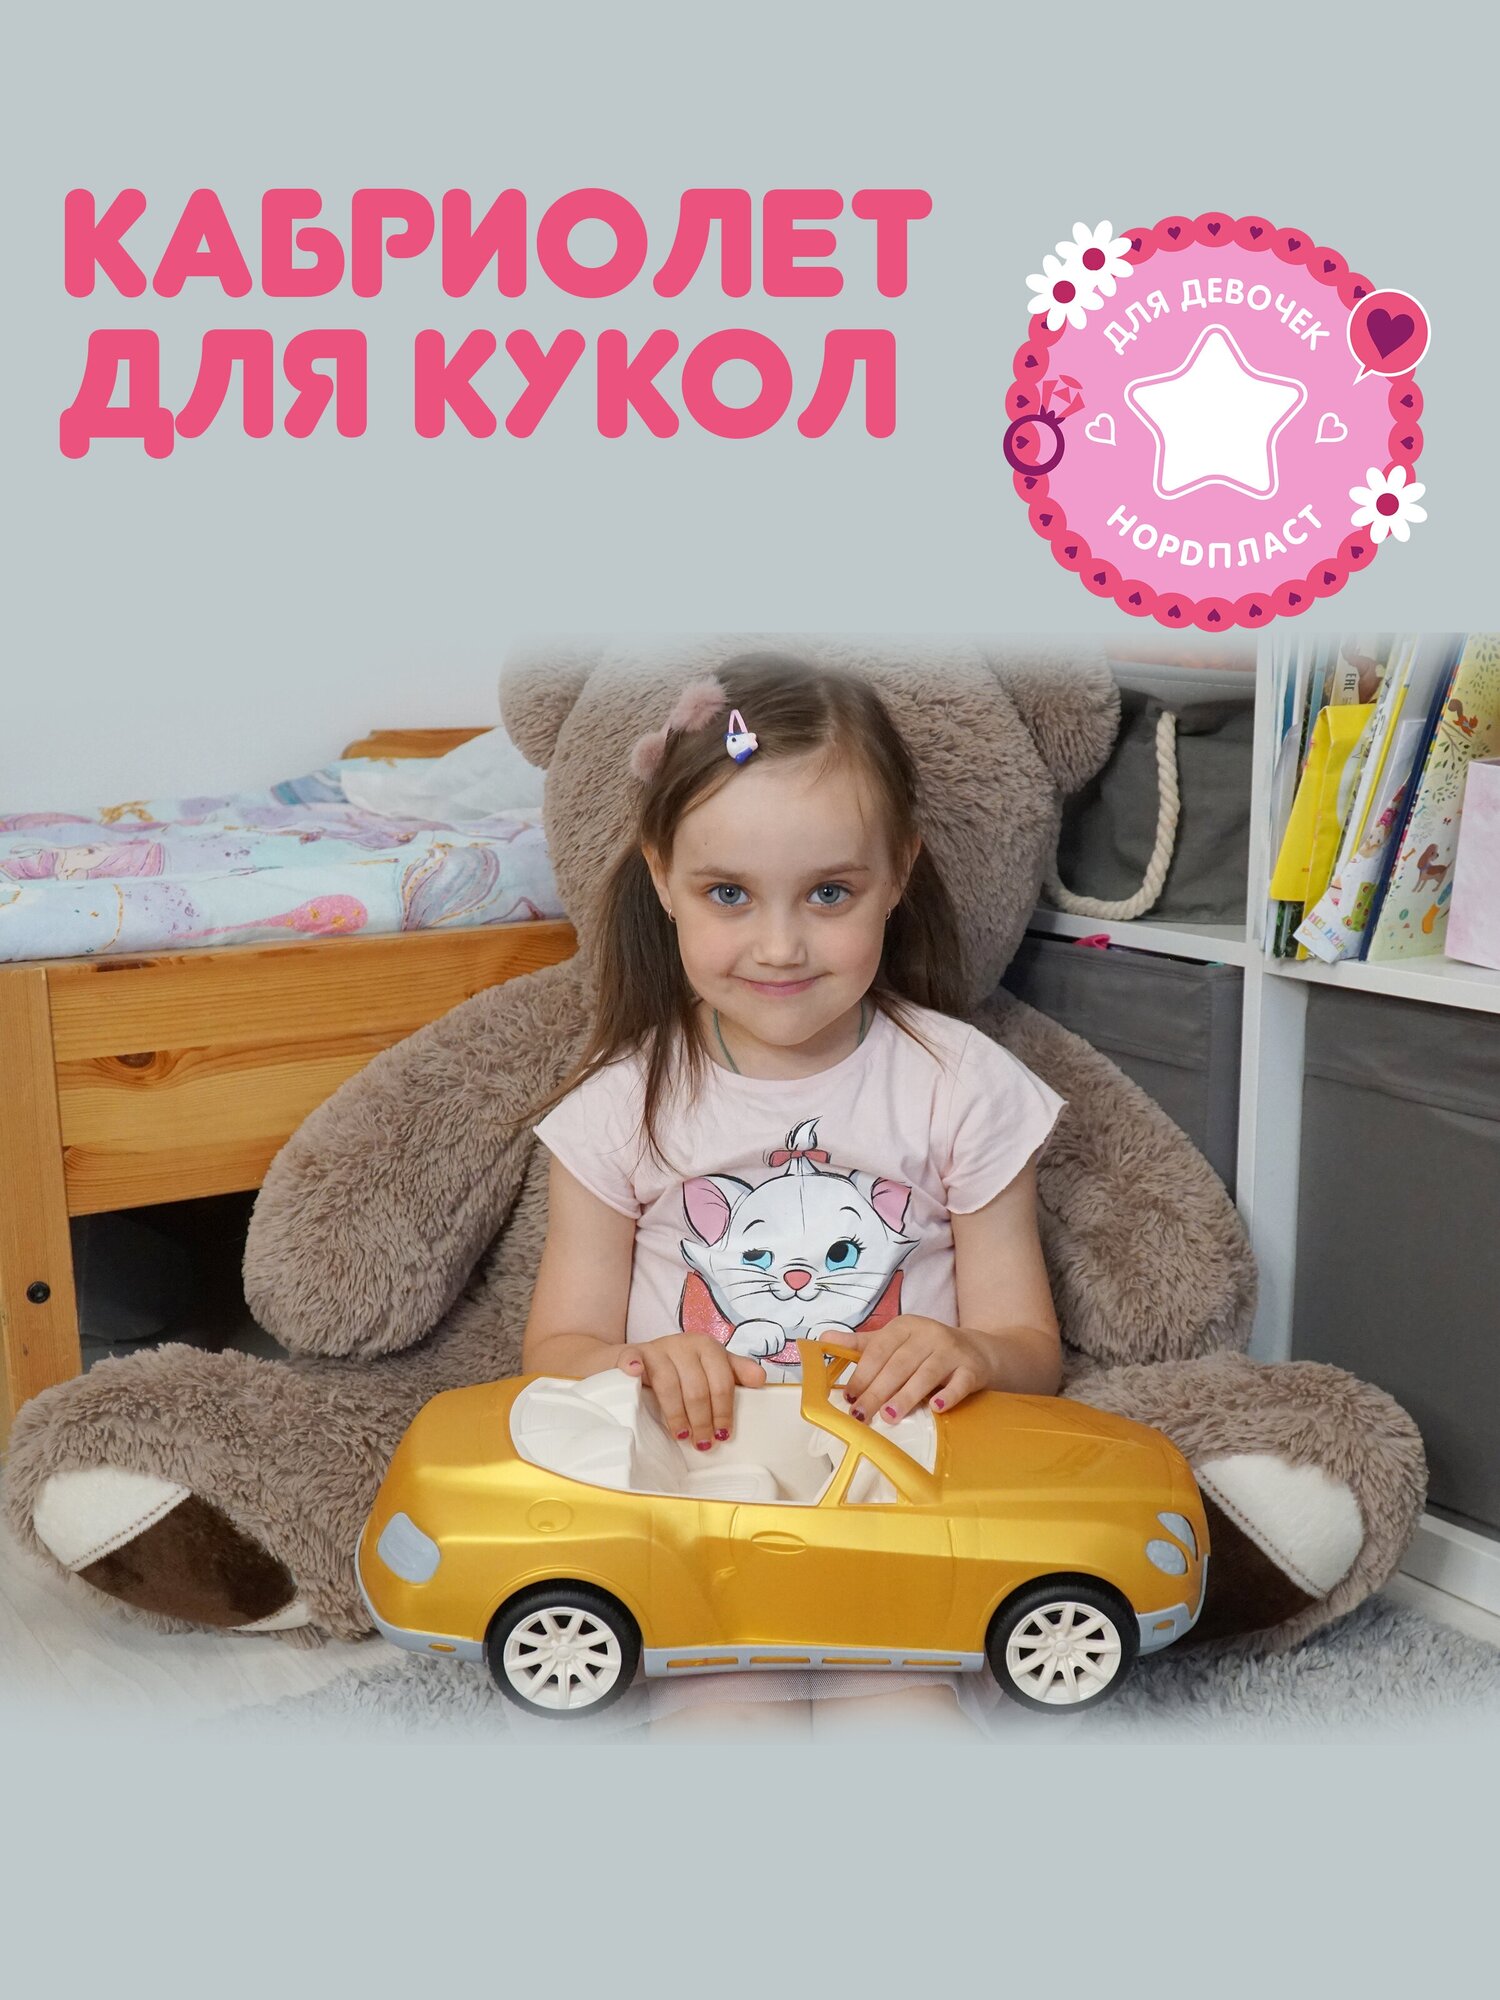 Машинка кабриолет для кукол золотой, кукольный транспорт, игрушки для девочек